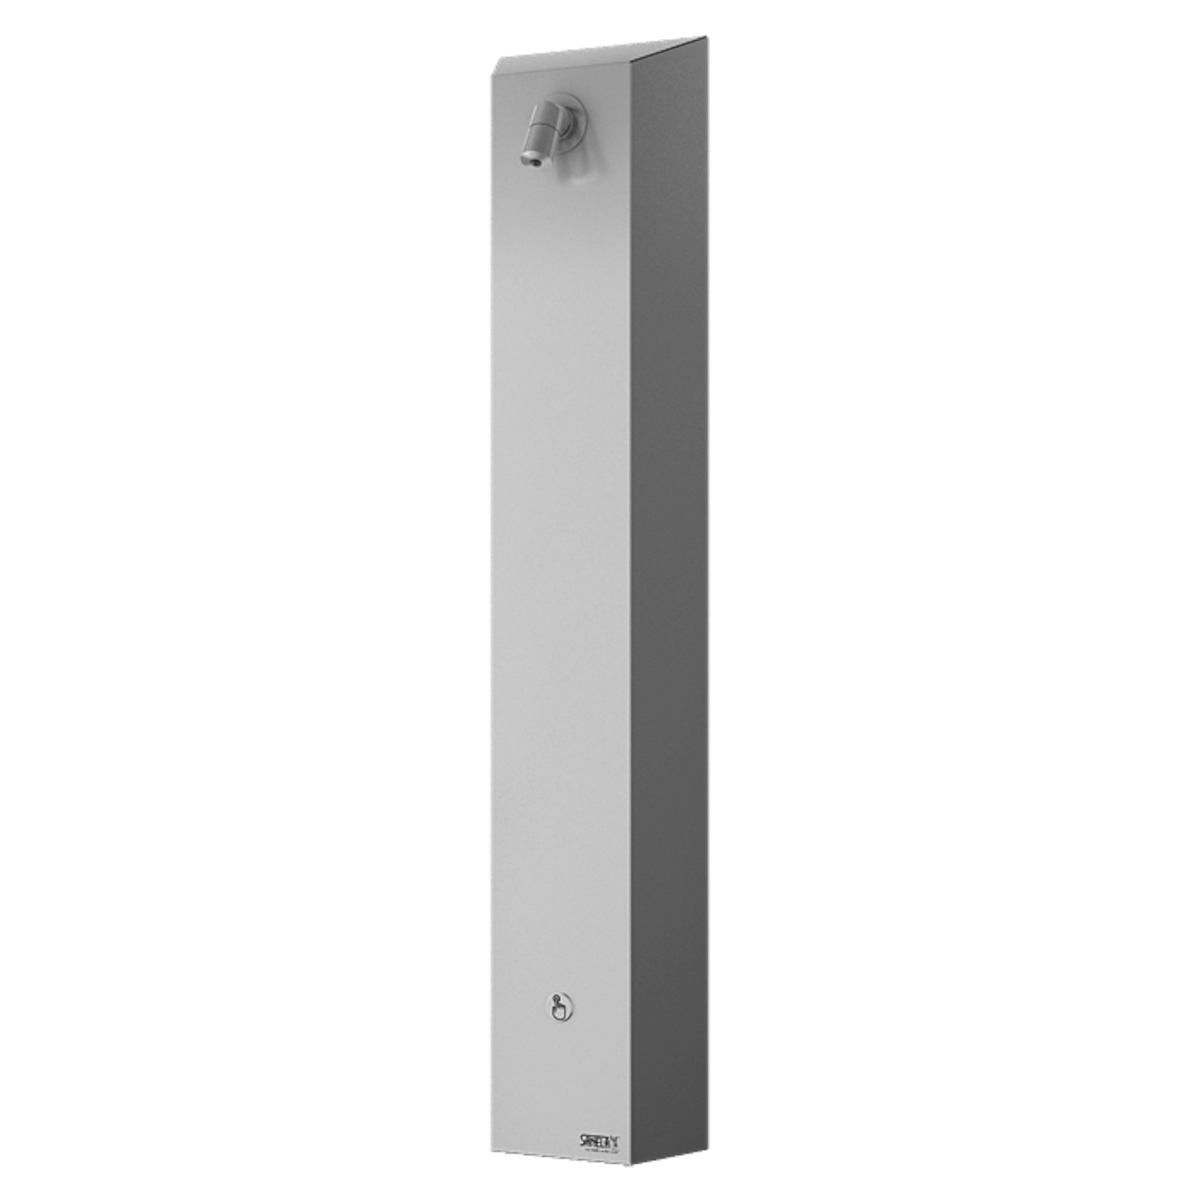 Sanela SLSN 01P - Nerezový sprchový panel s integrovaným piezo ovládáním, 1 voda (SLSN01P) - Siko - koupelny - kuchyně